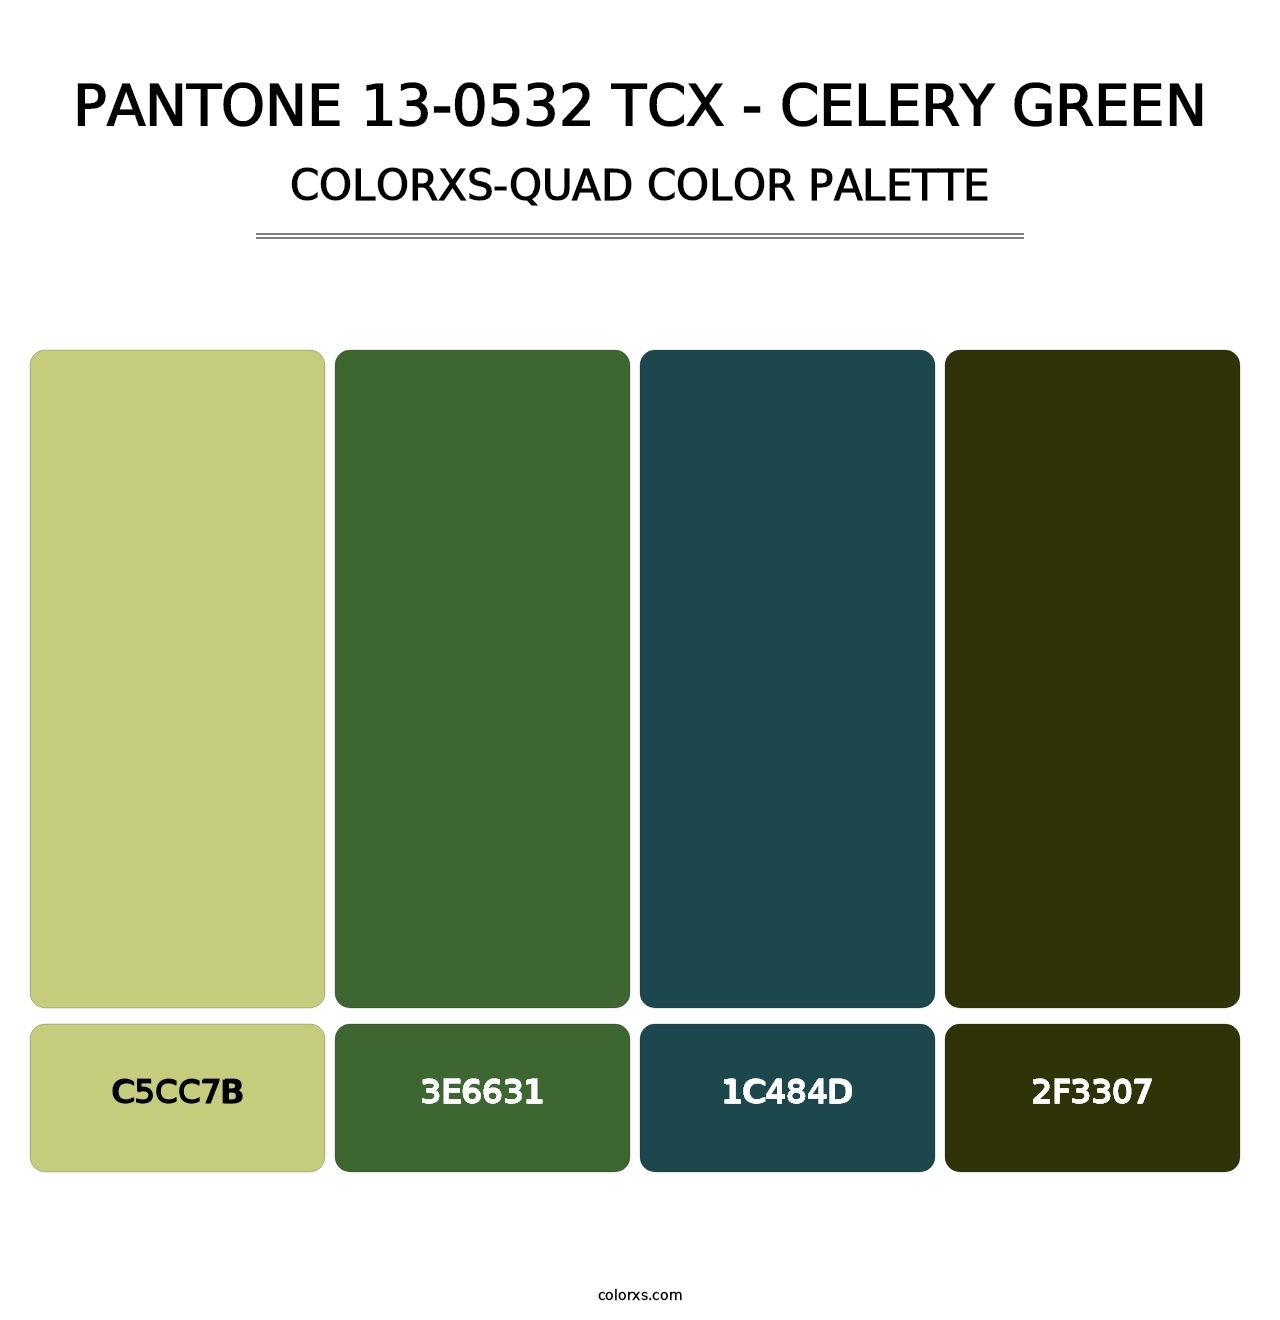 PANTONE 13-0532 TCX - Celery Green - Colorxs Quad Palette